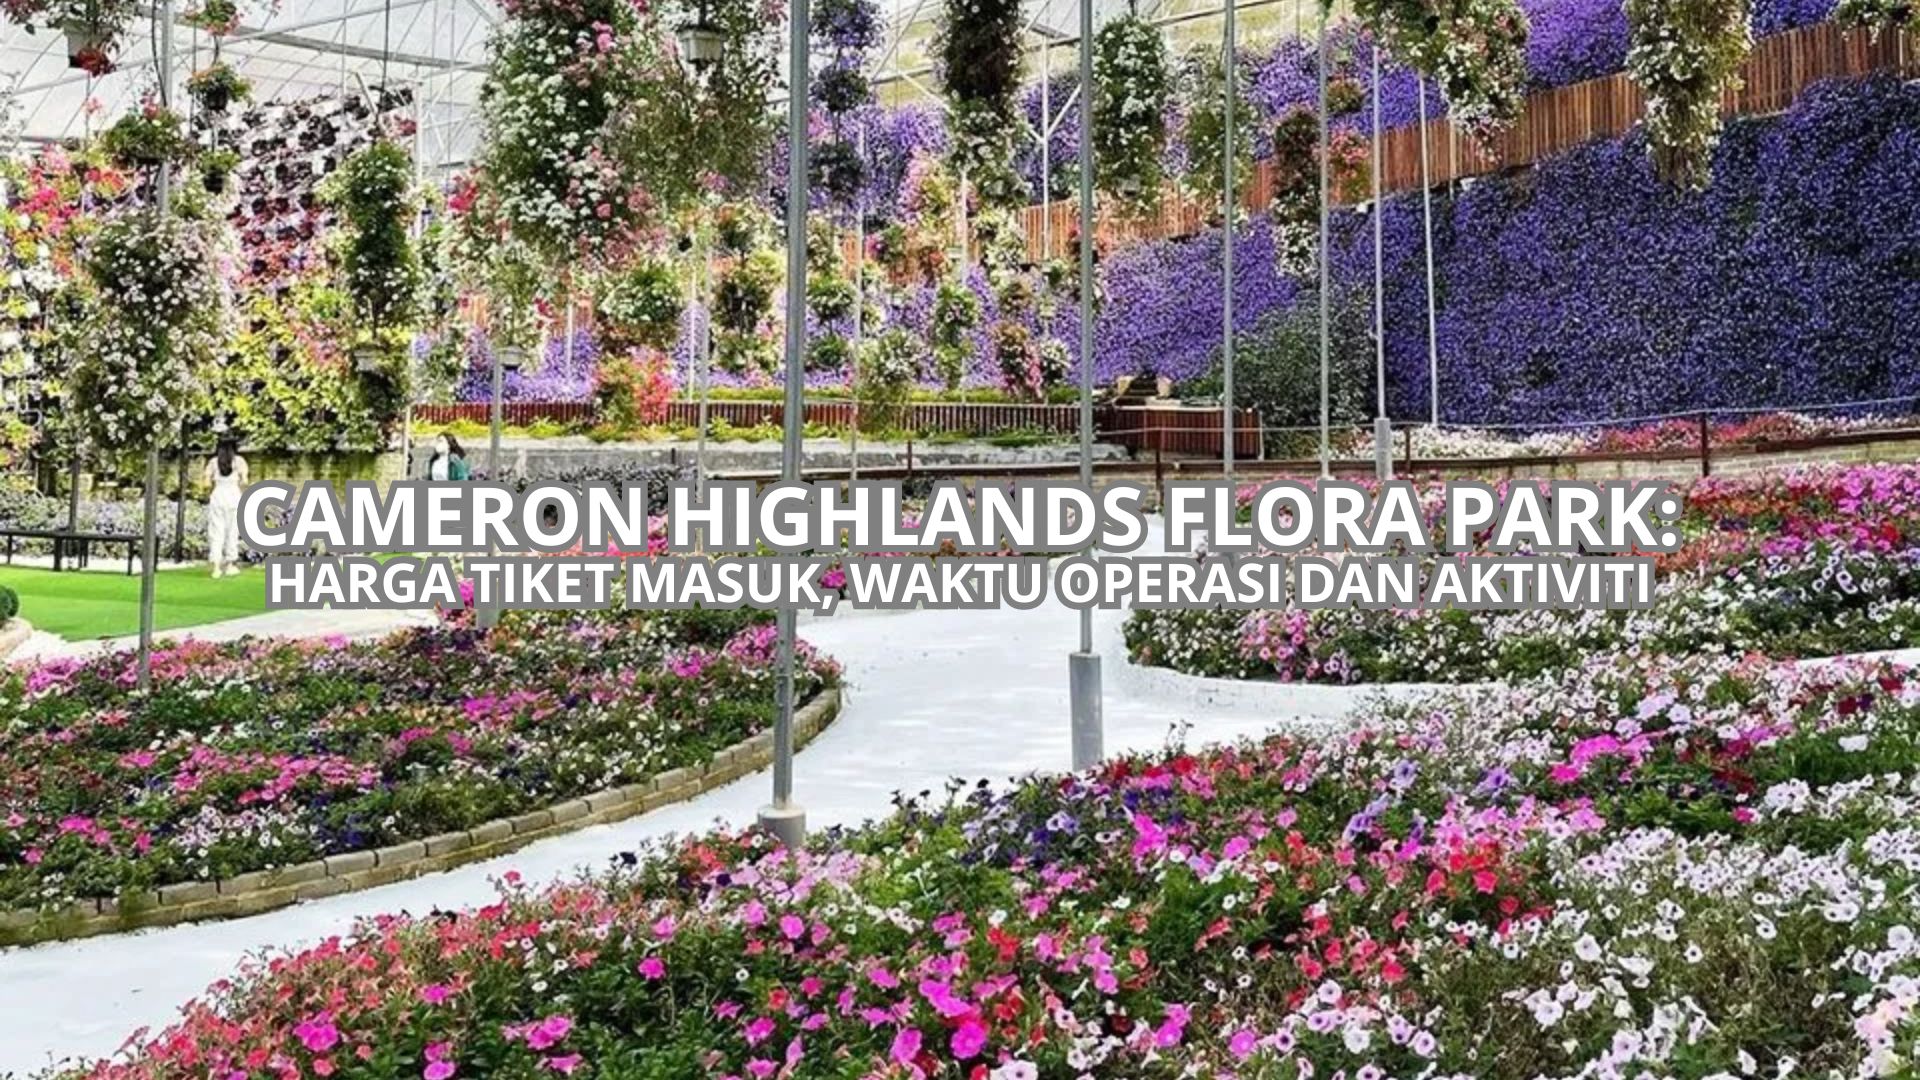 Cameron Highlands Flora Park Cover